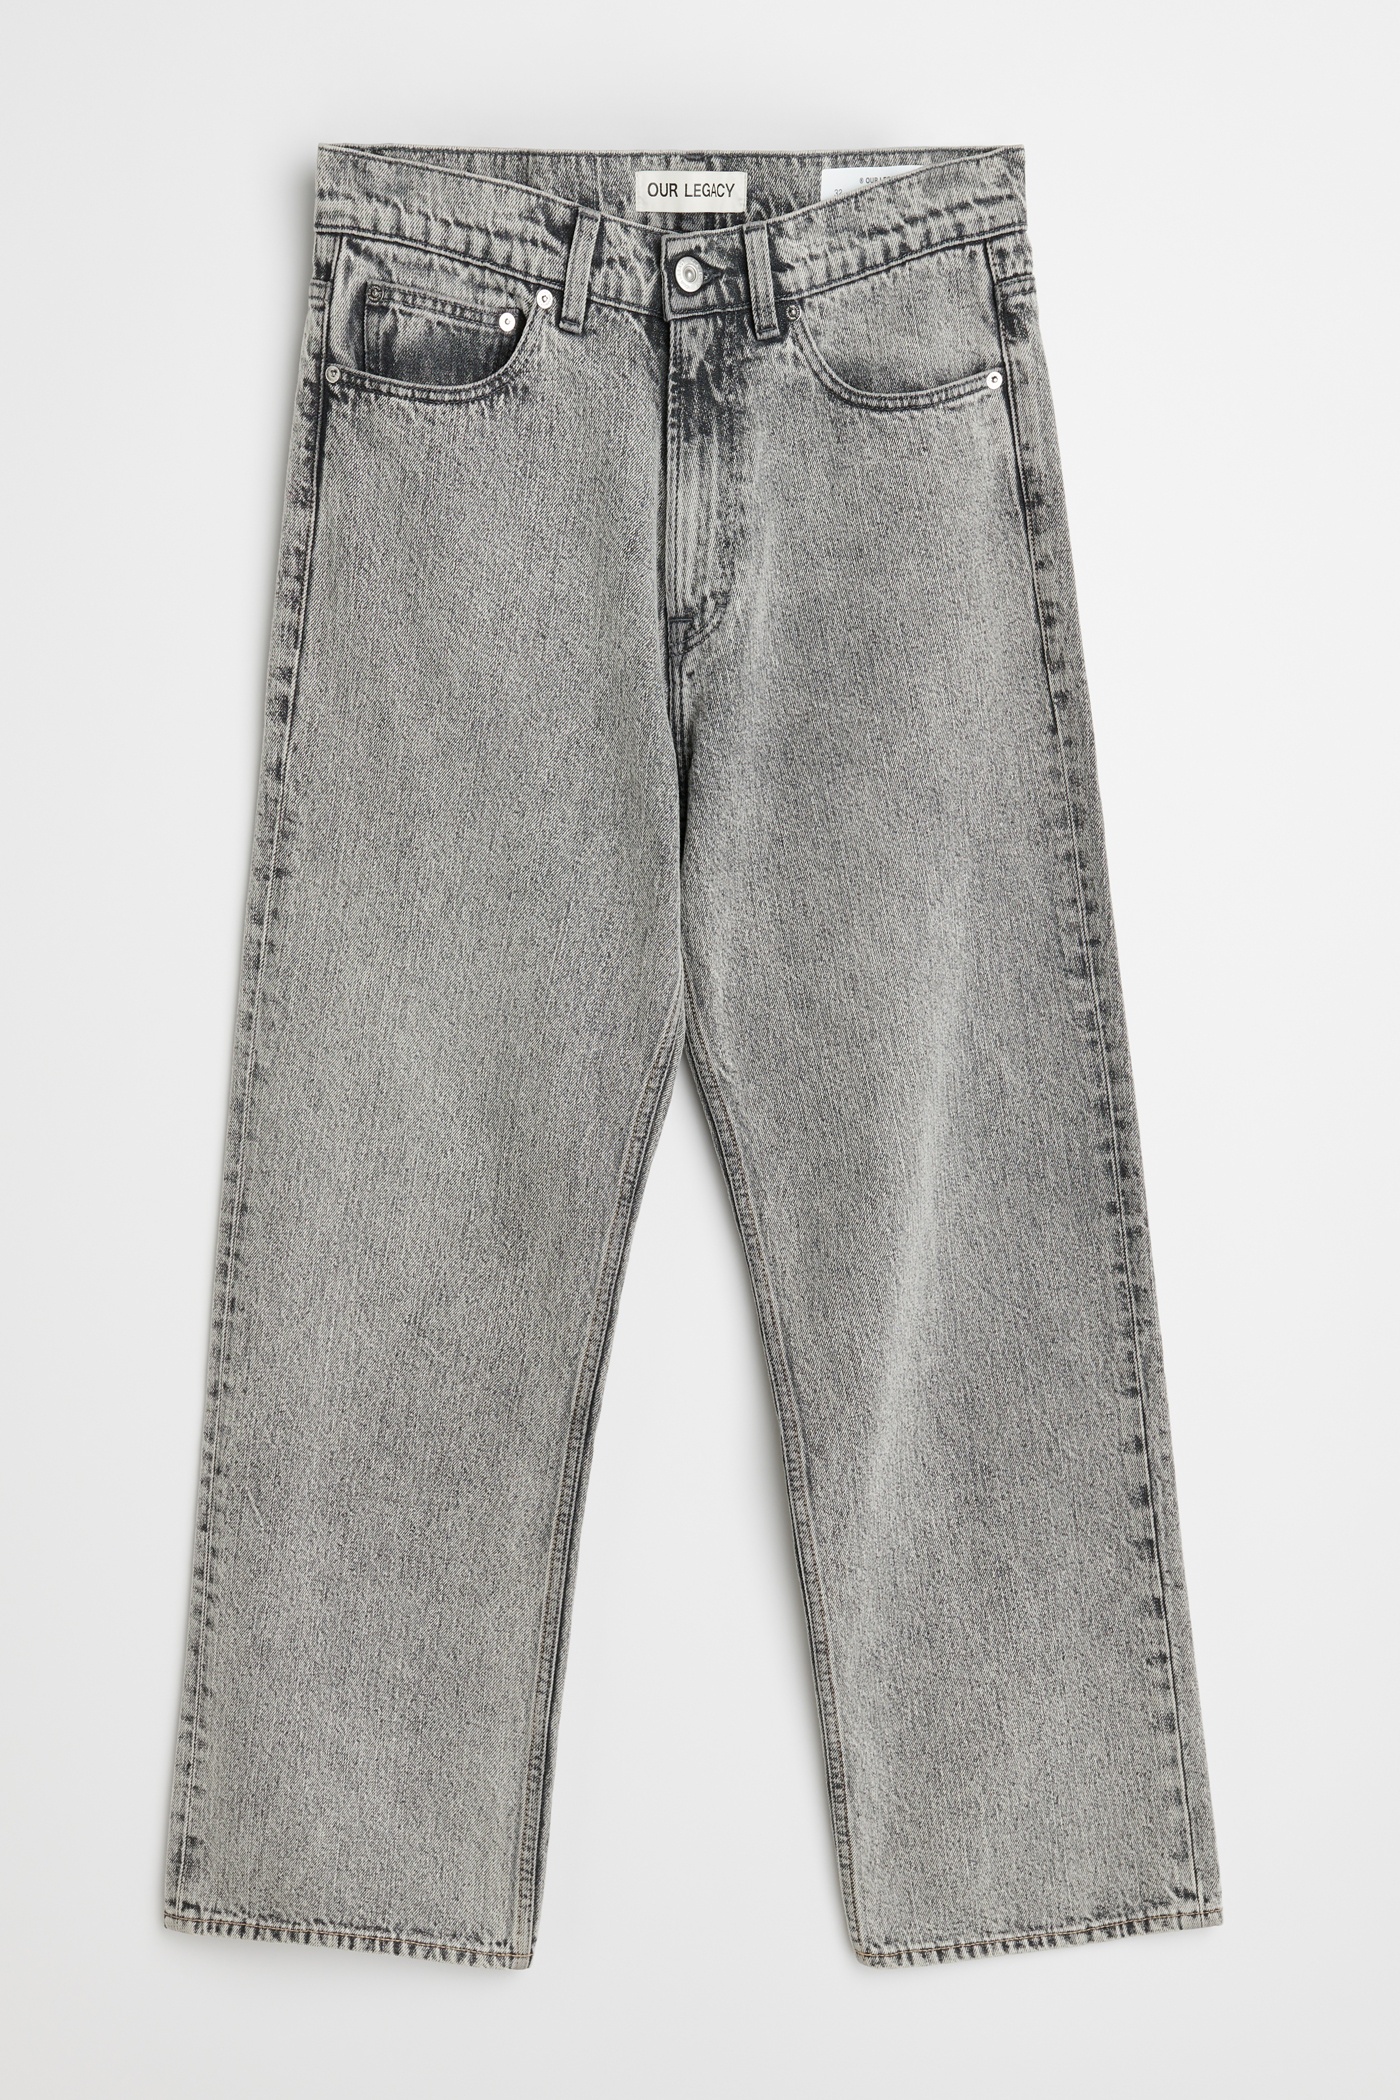 Third Cut Jeans Superbleach Black Denim - 1